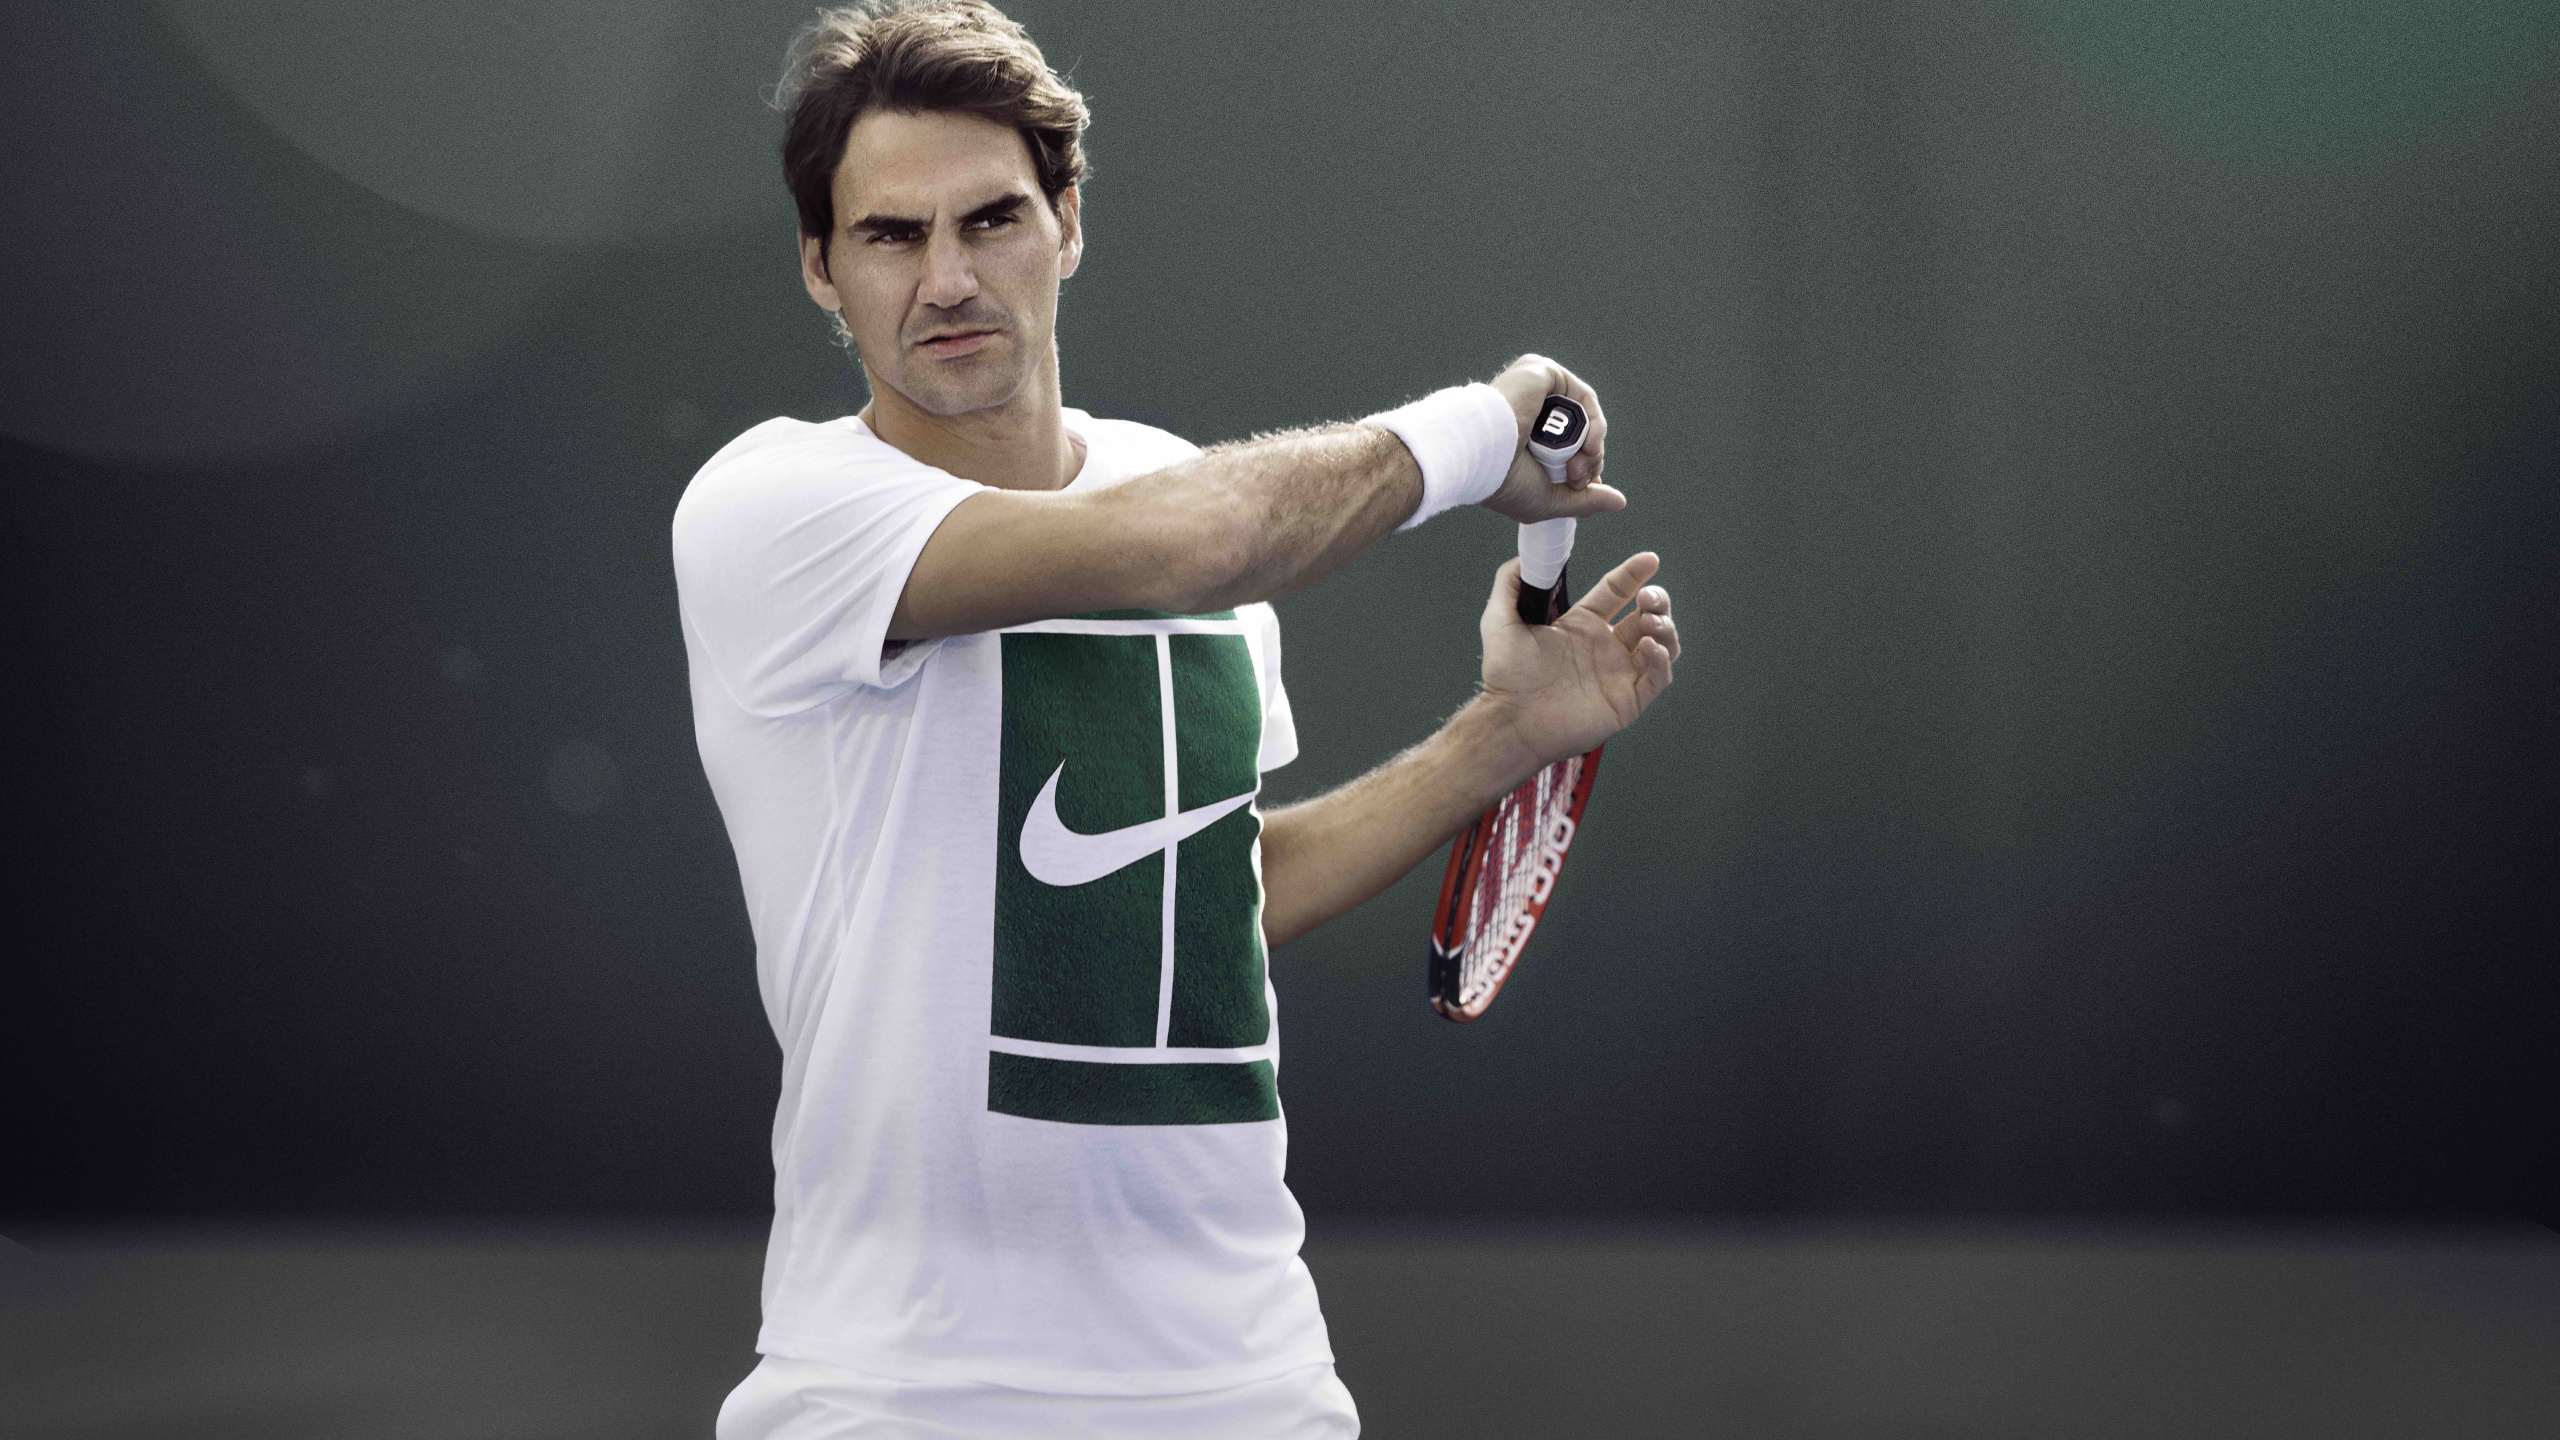 Homme en Chemise Jersey Nike Vert et Blanc Tenant Une Raquette de Tennis Rouge et Blanc. Wallpaper in 2560x1440 Resolution